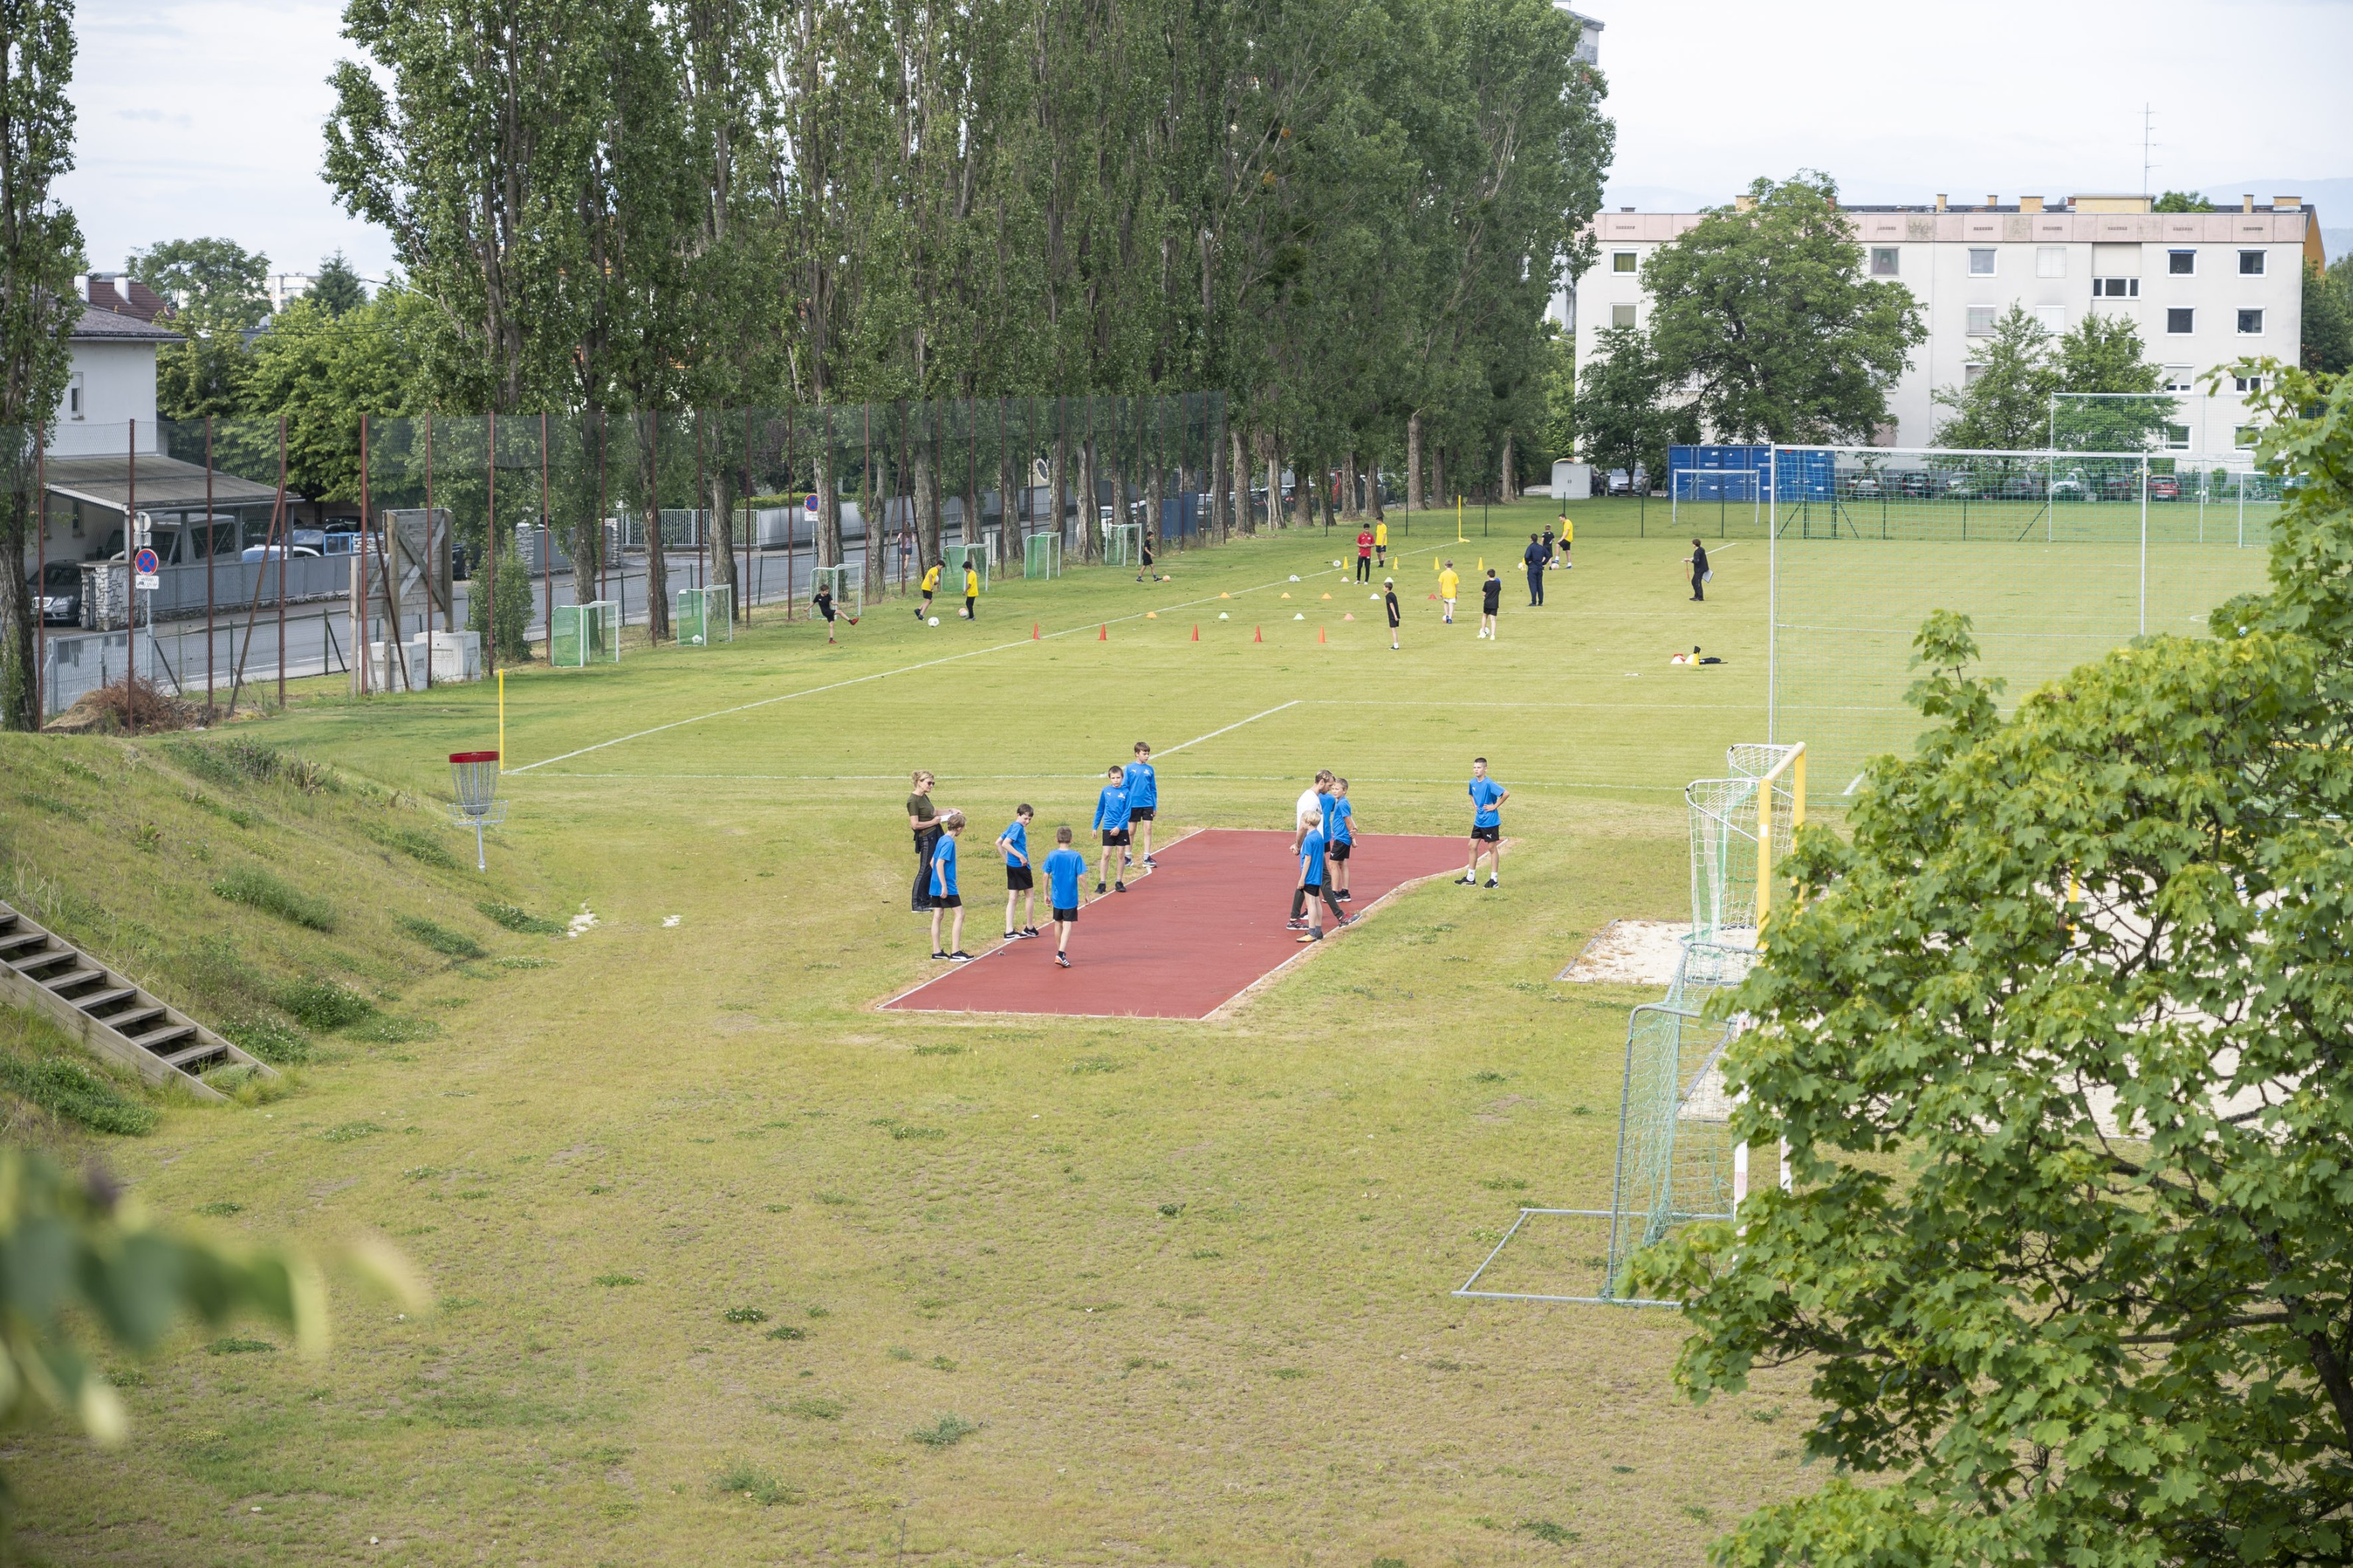 Sportmittelschule Bruckner, Sportplatz mit SchüllerInnen